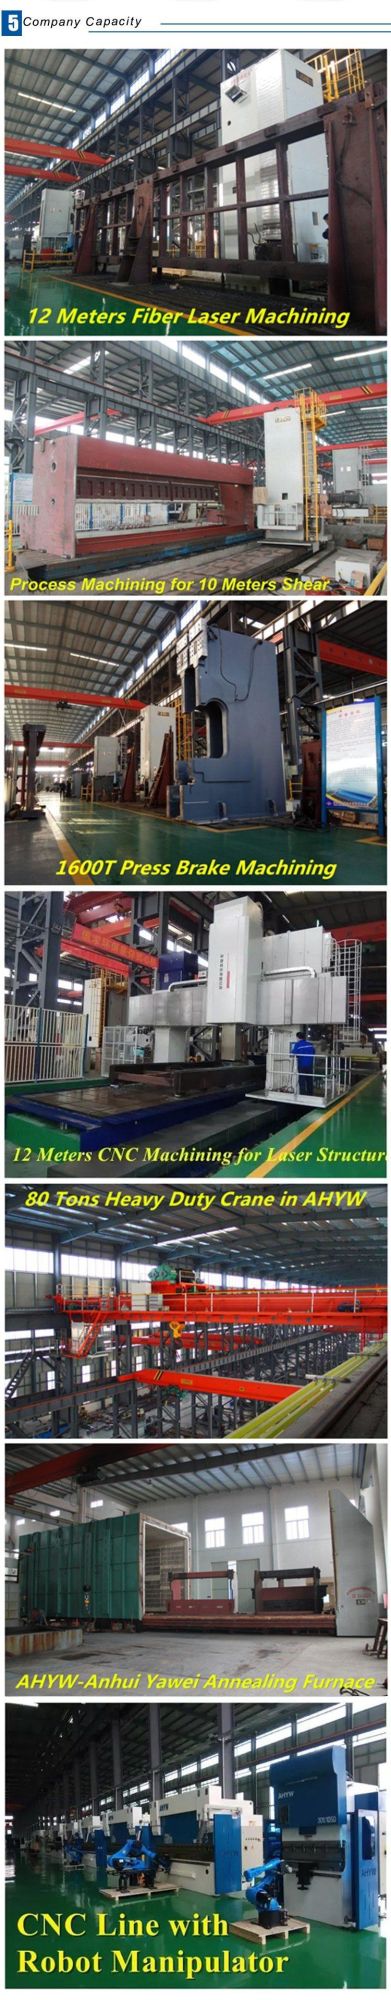 CNC Cutting Hydraulic Squaring Shearing Machine 6*3200